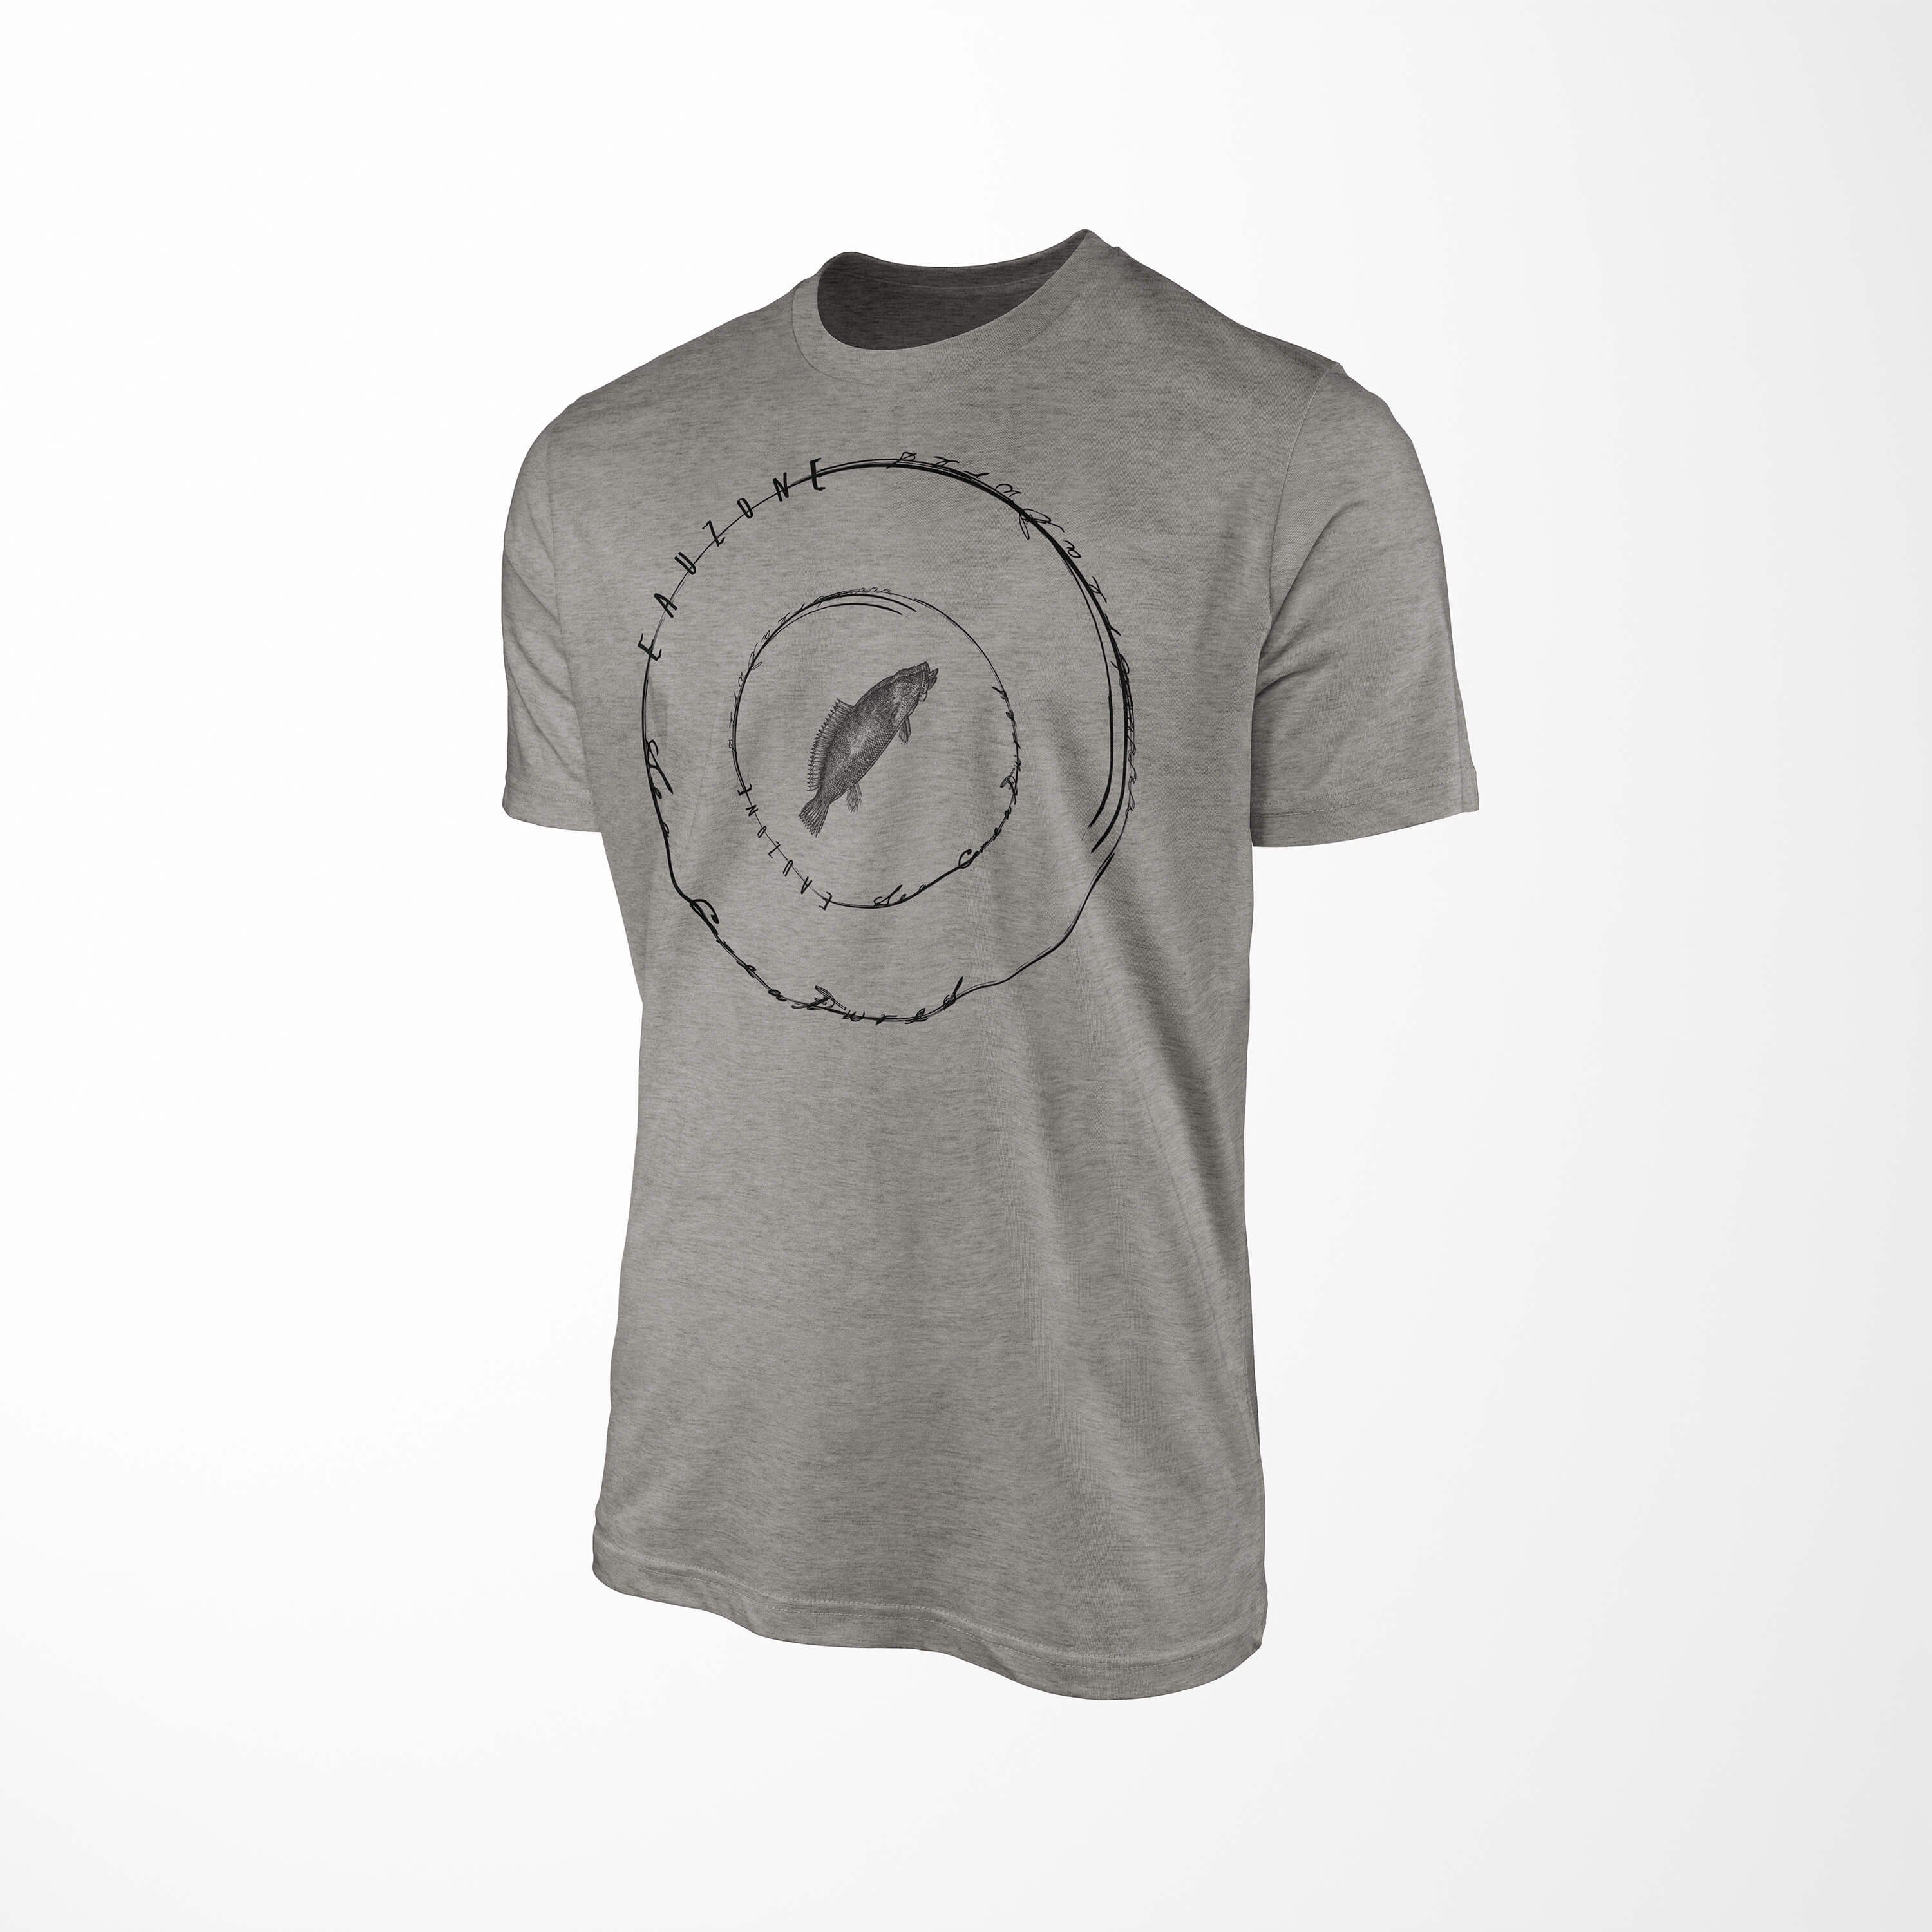 Serie: und Art T-Shirt 016 Ash Sinus Creatures, Sea / Fische feine Tiefsee Sea T-Shirt - Schnitt Struktur sportlicher